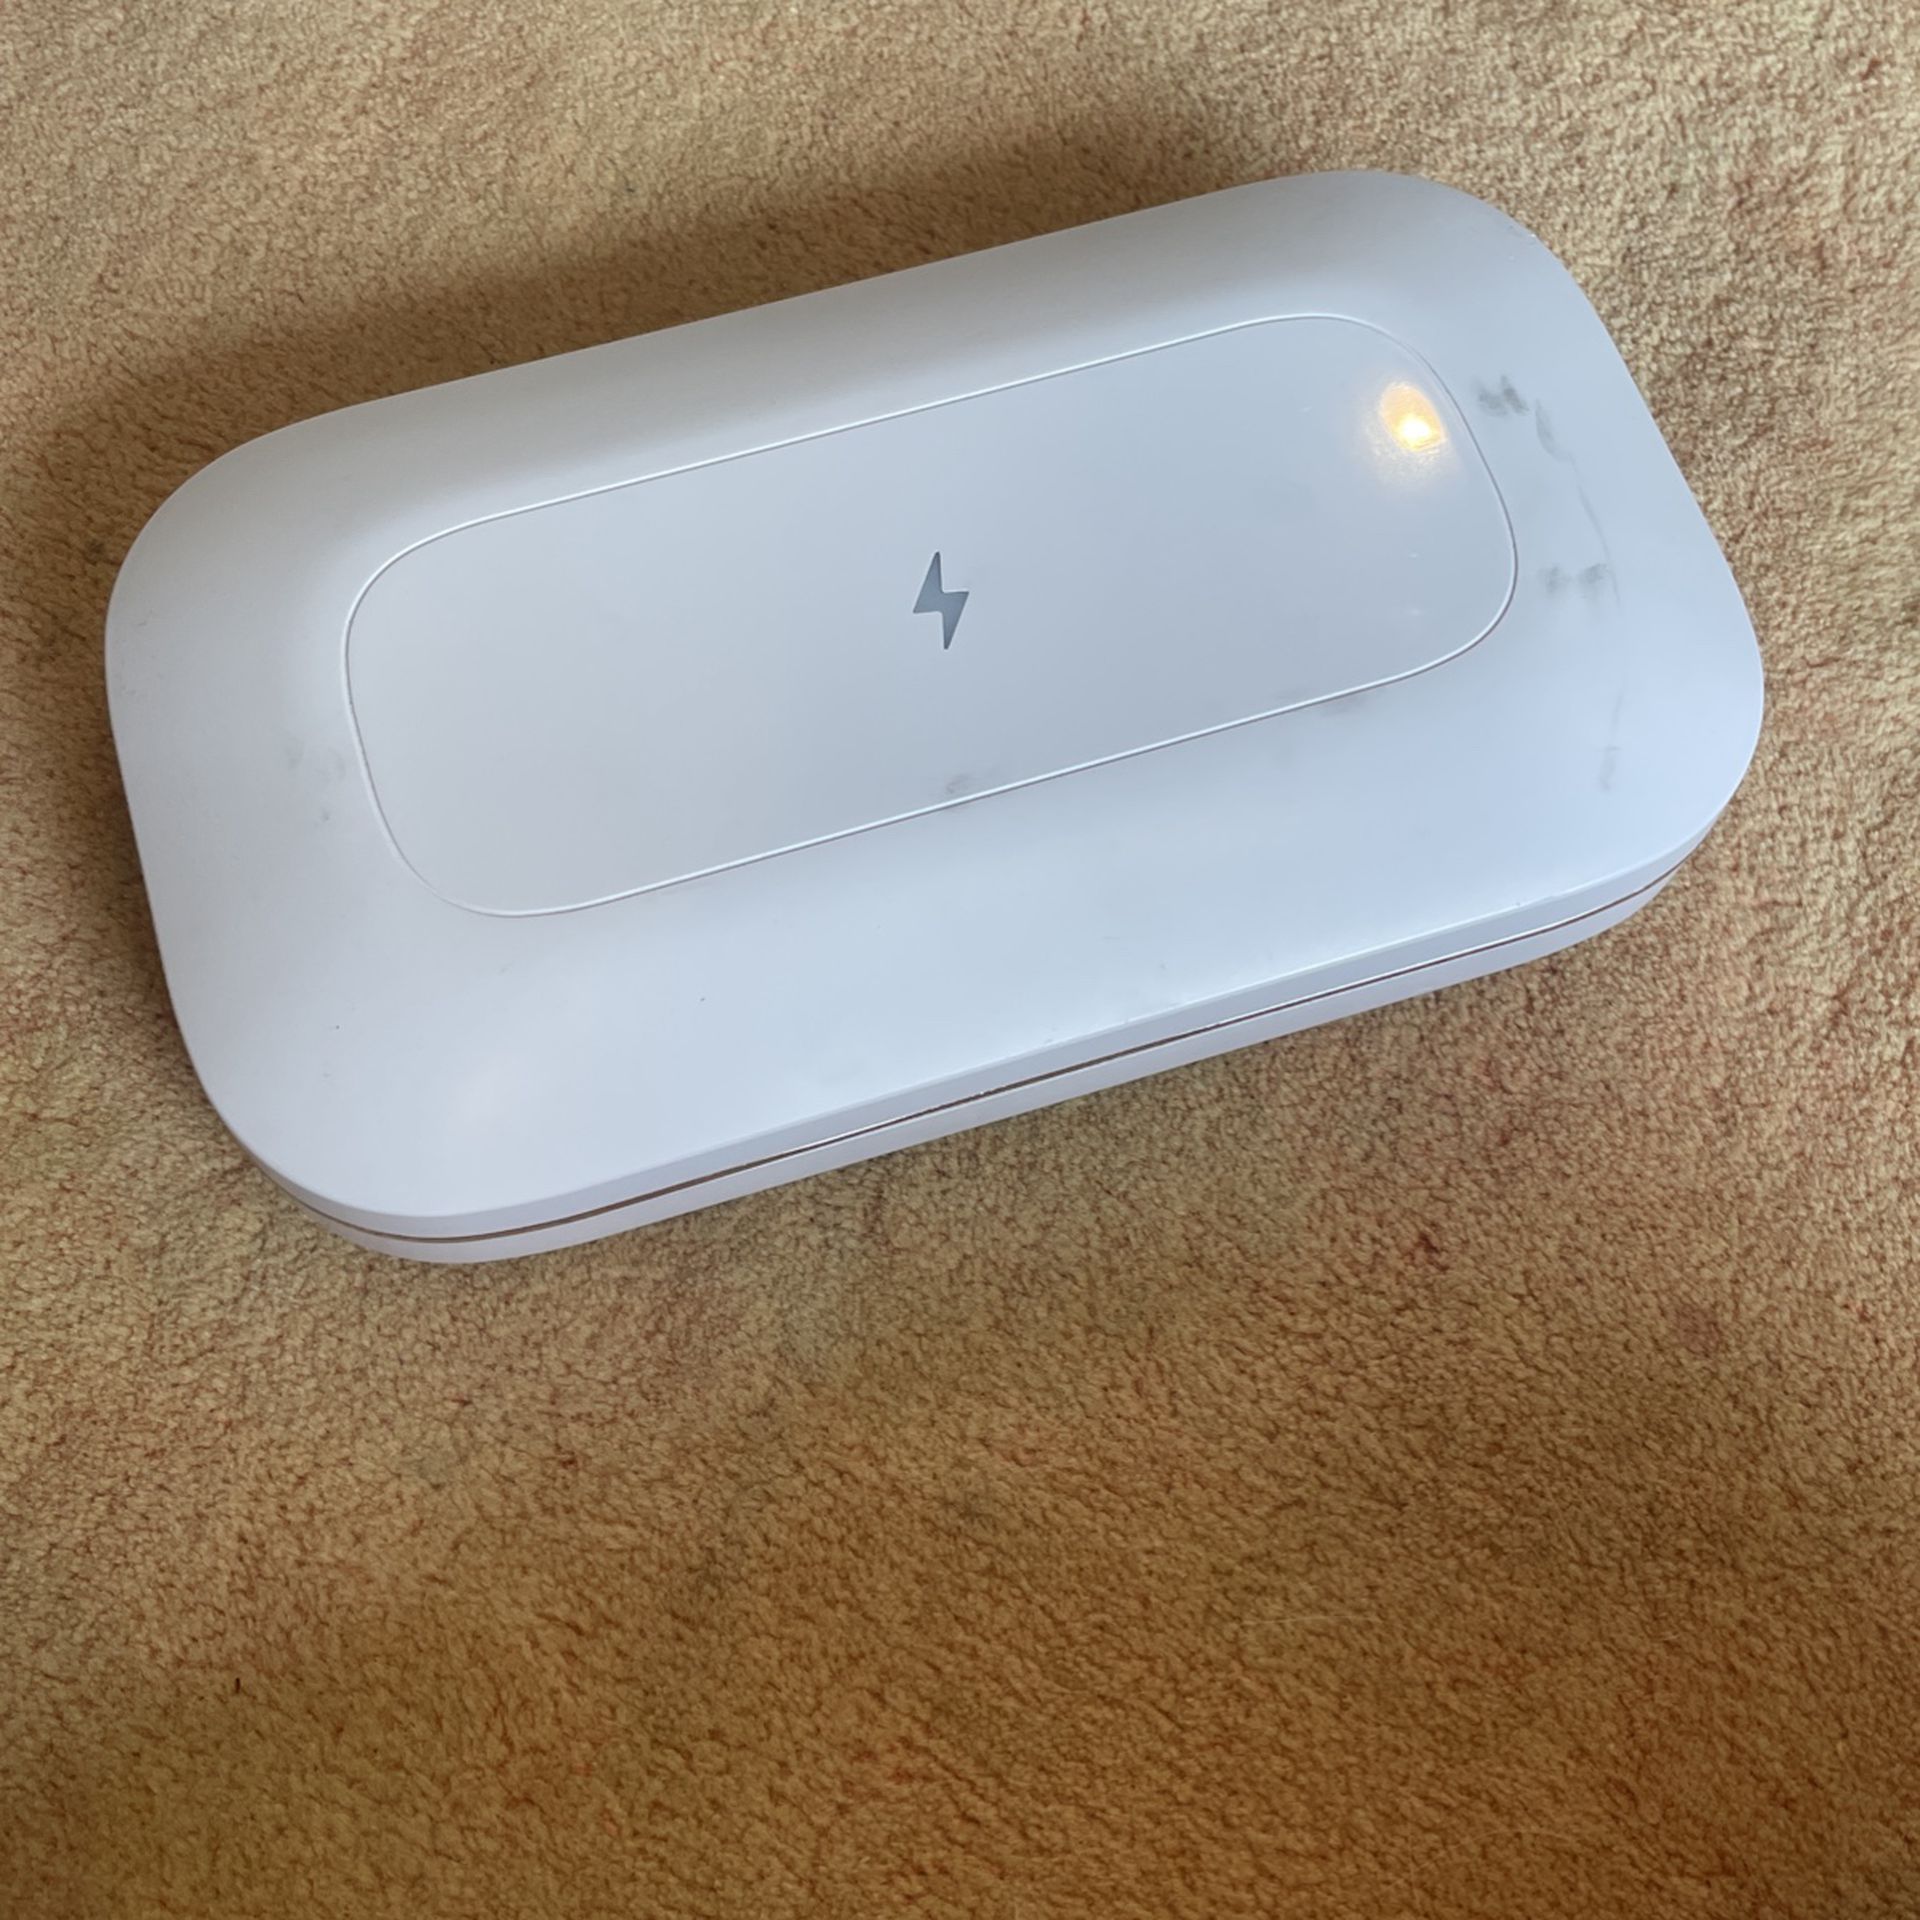 UV Phone Sanitizer - PhoneSoap Pro